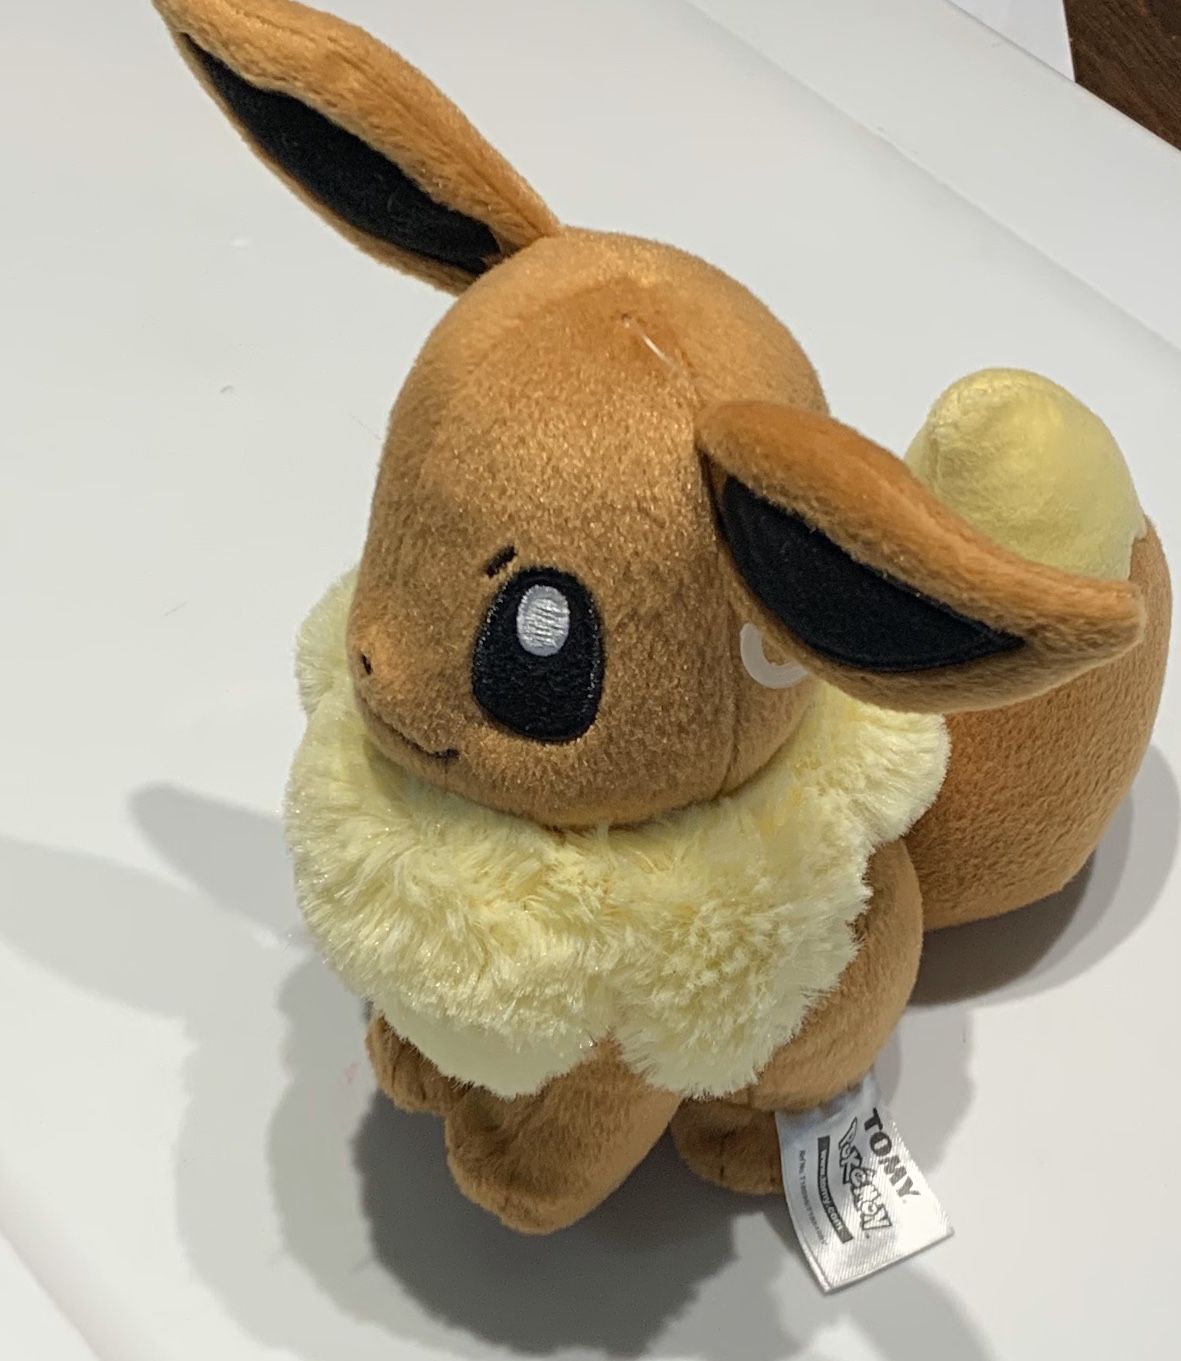 Pokémon eevee stuffed animal